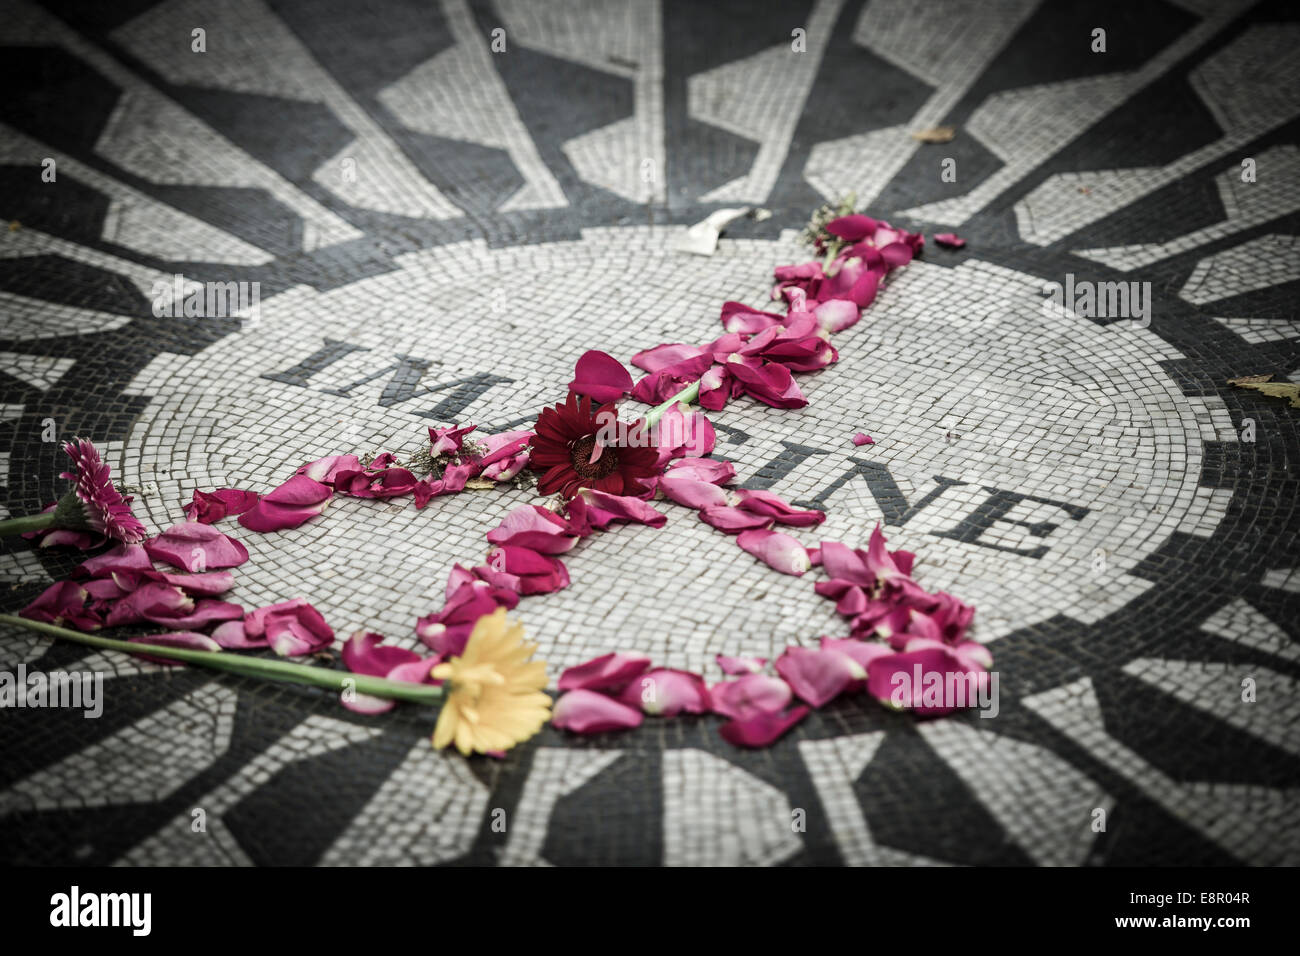 Das Imagine-Mosaik, die Gedenkstätte zum ehemaligen Beatle John Lennon, Strawberry Fields, Central Park - New York - USA. Stockfoto